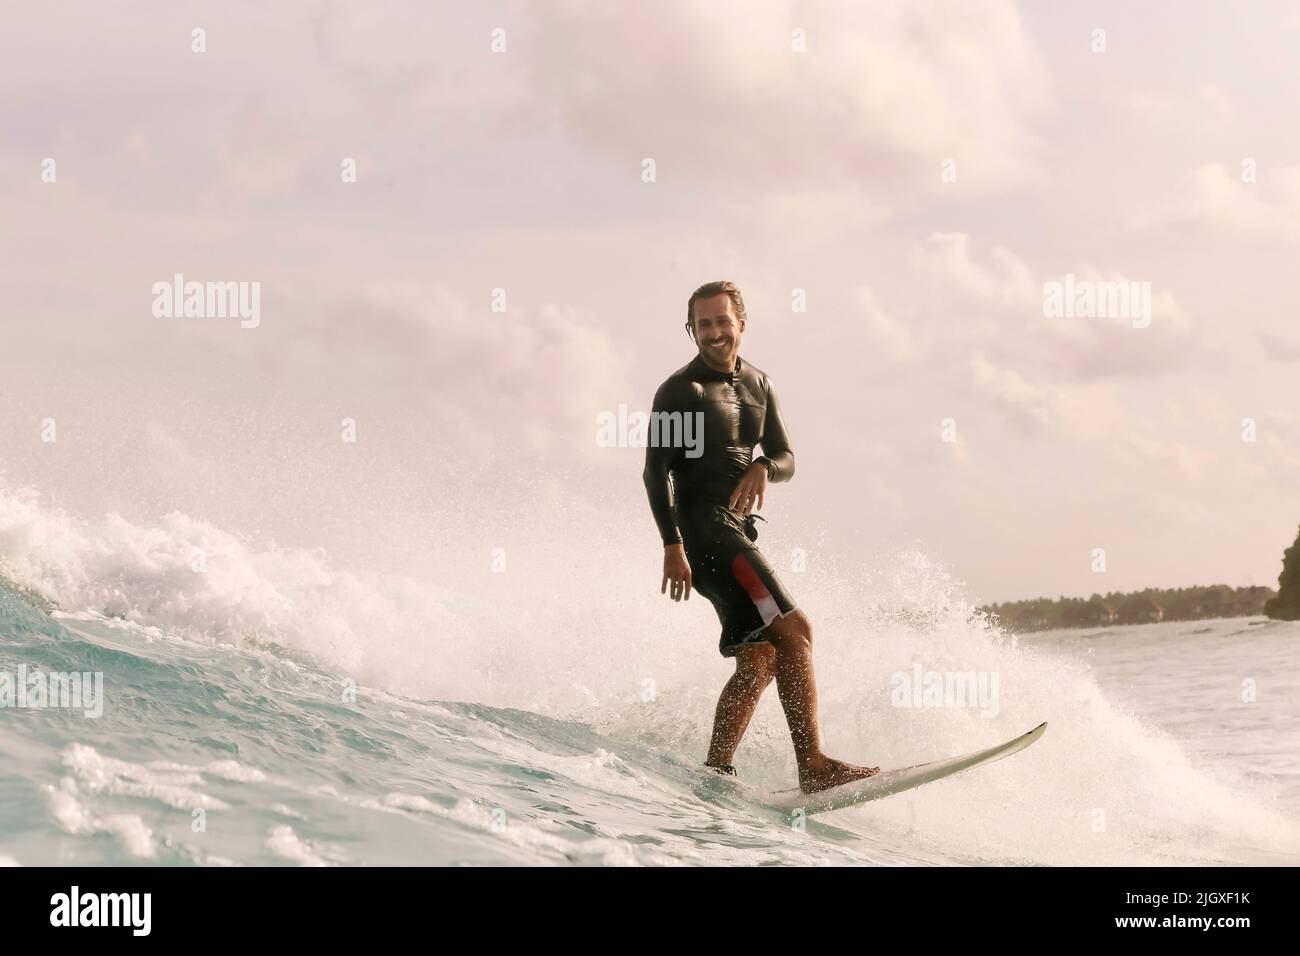 Surfeur mâle sur une vague, Maldives Banque D'Images